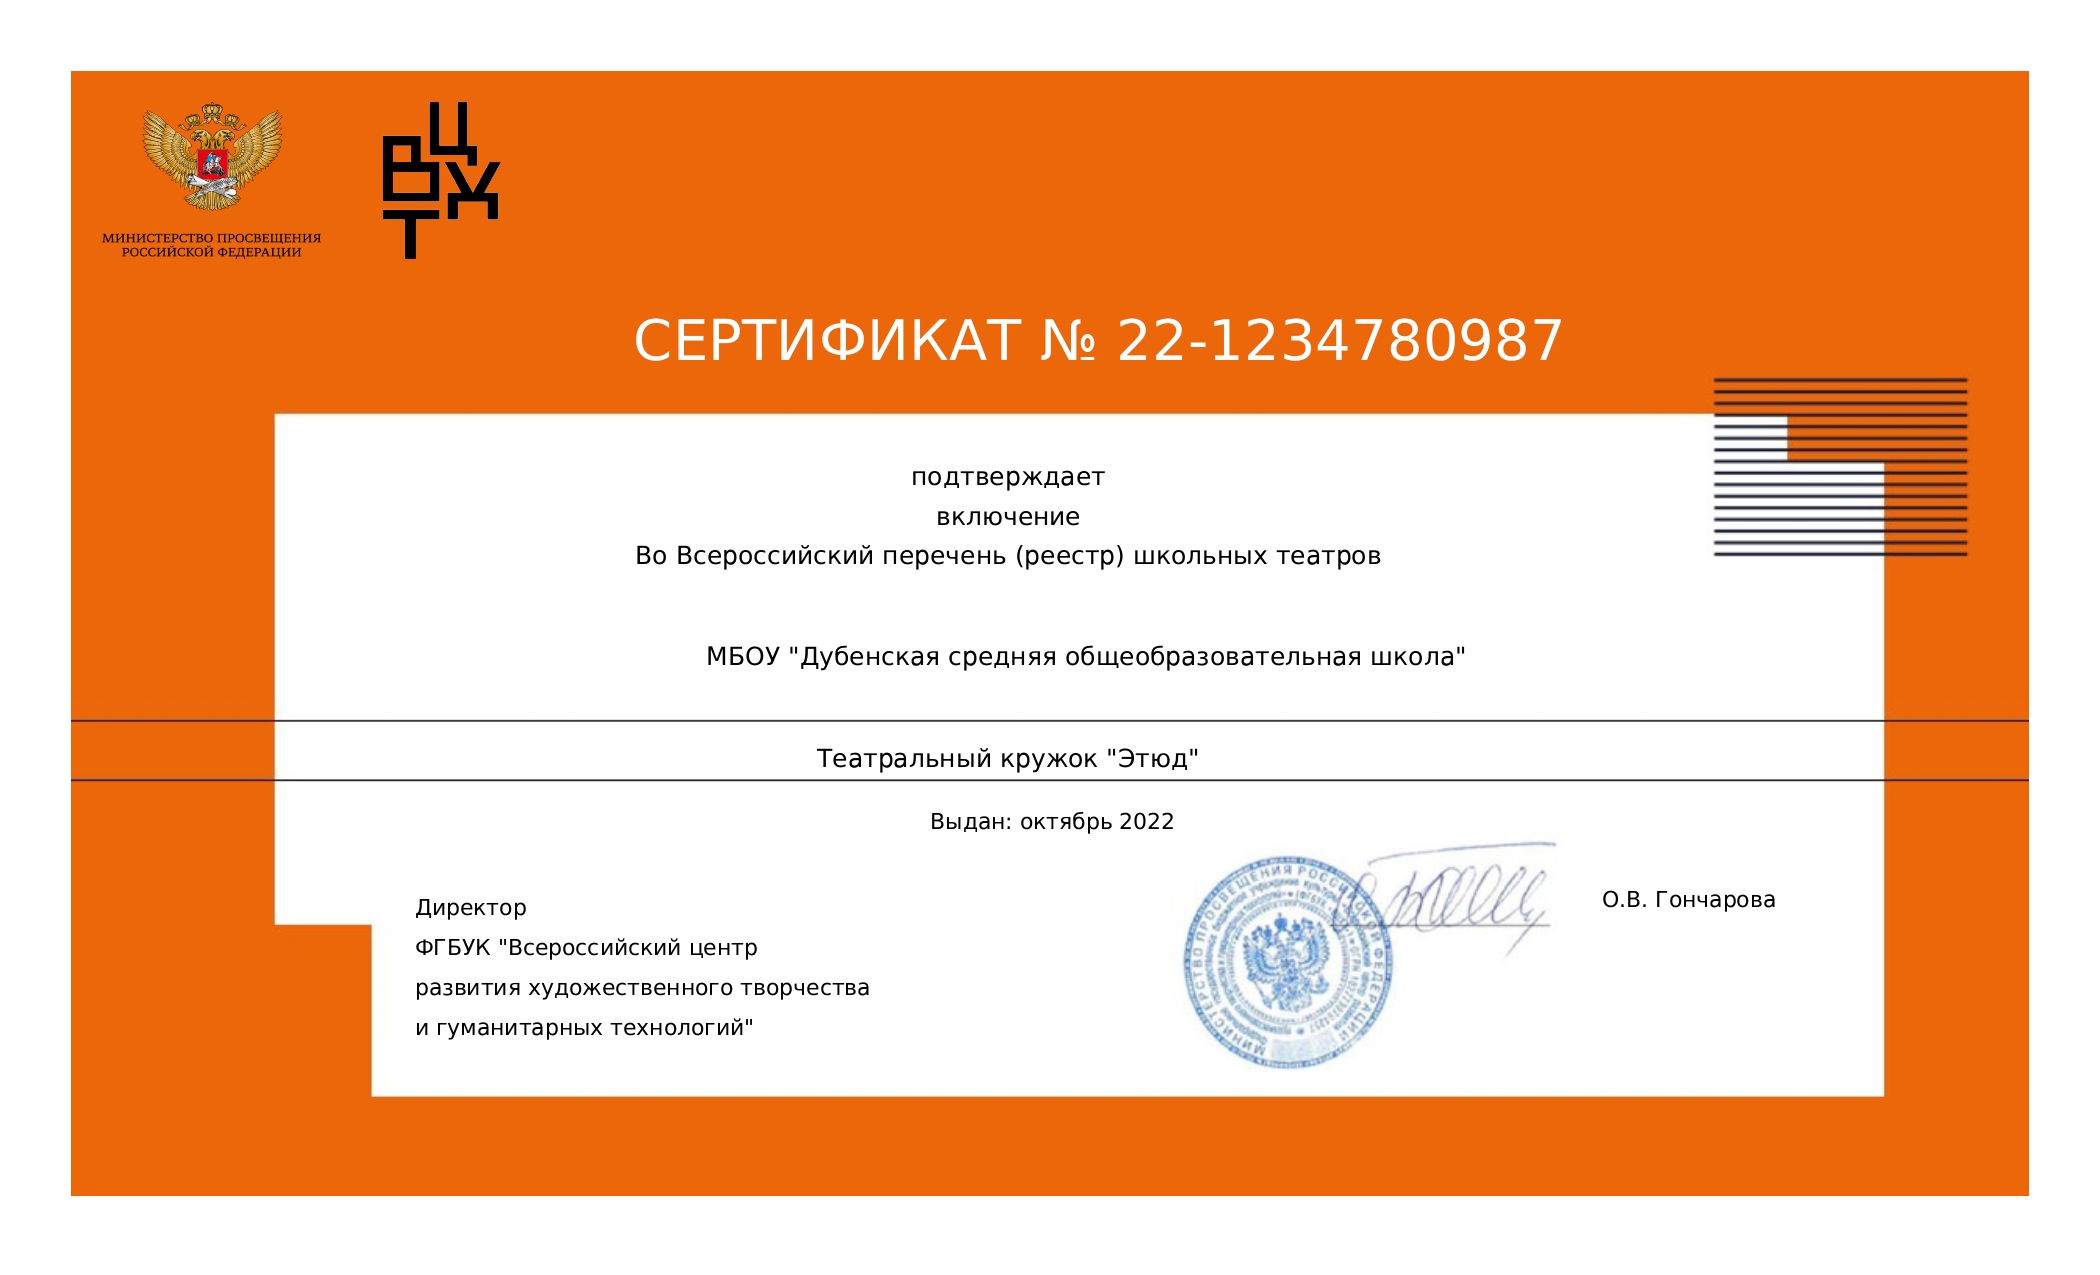 Сертификат о включении во Всероссийский реестр школьных театров